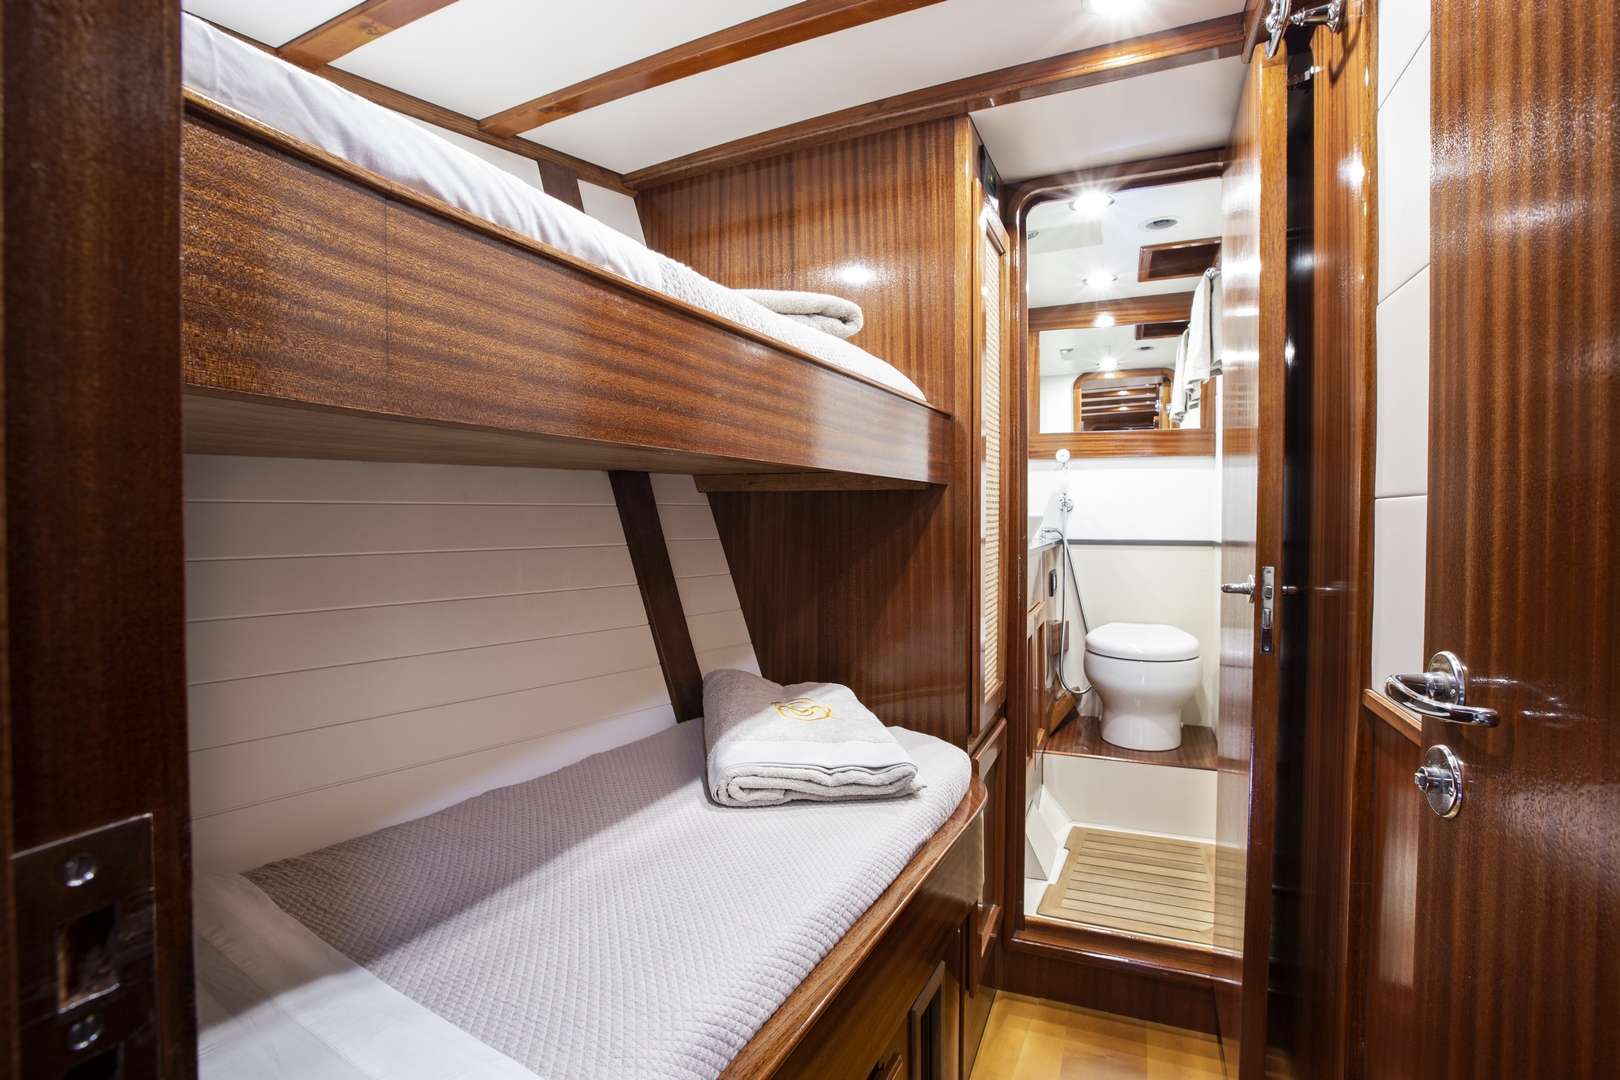 Quarta Santa Maria bunk bed cabin